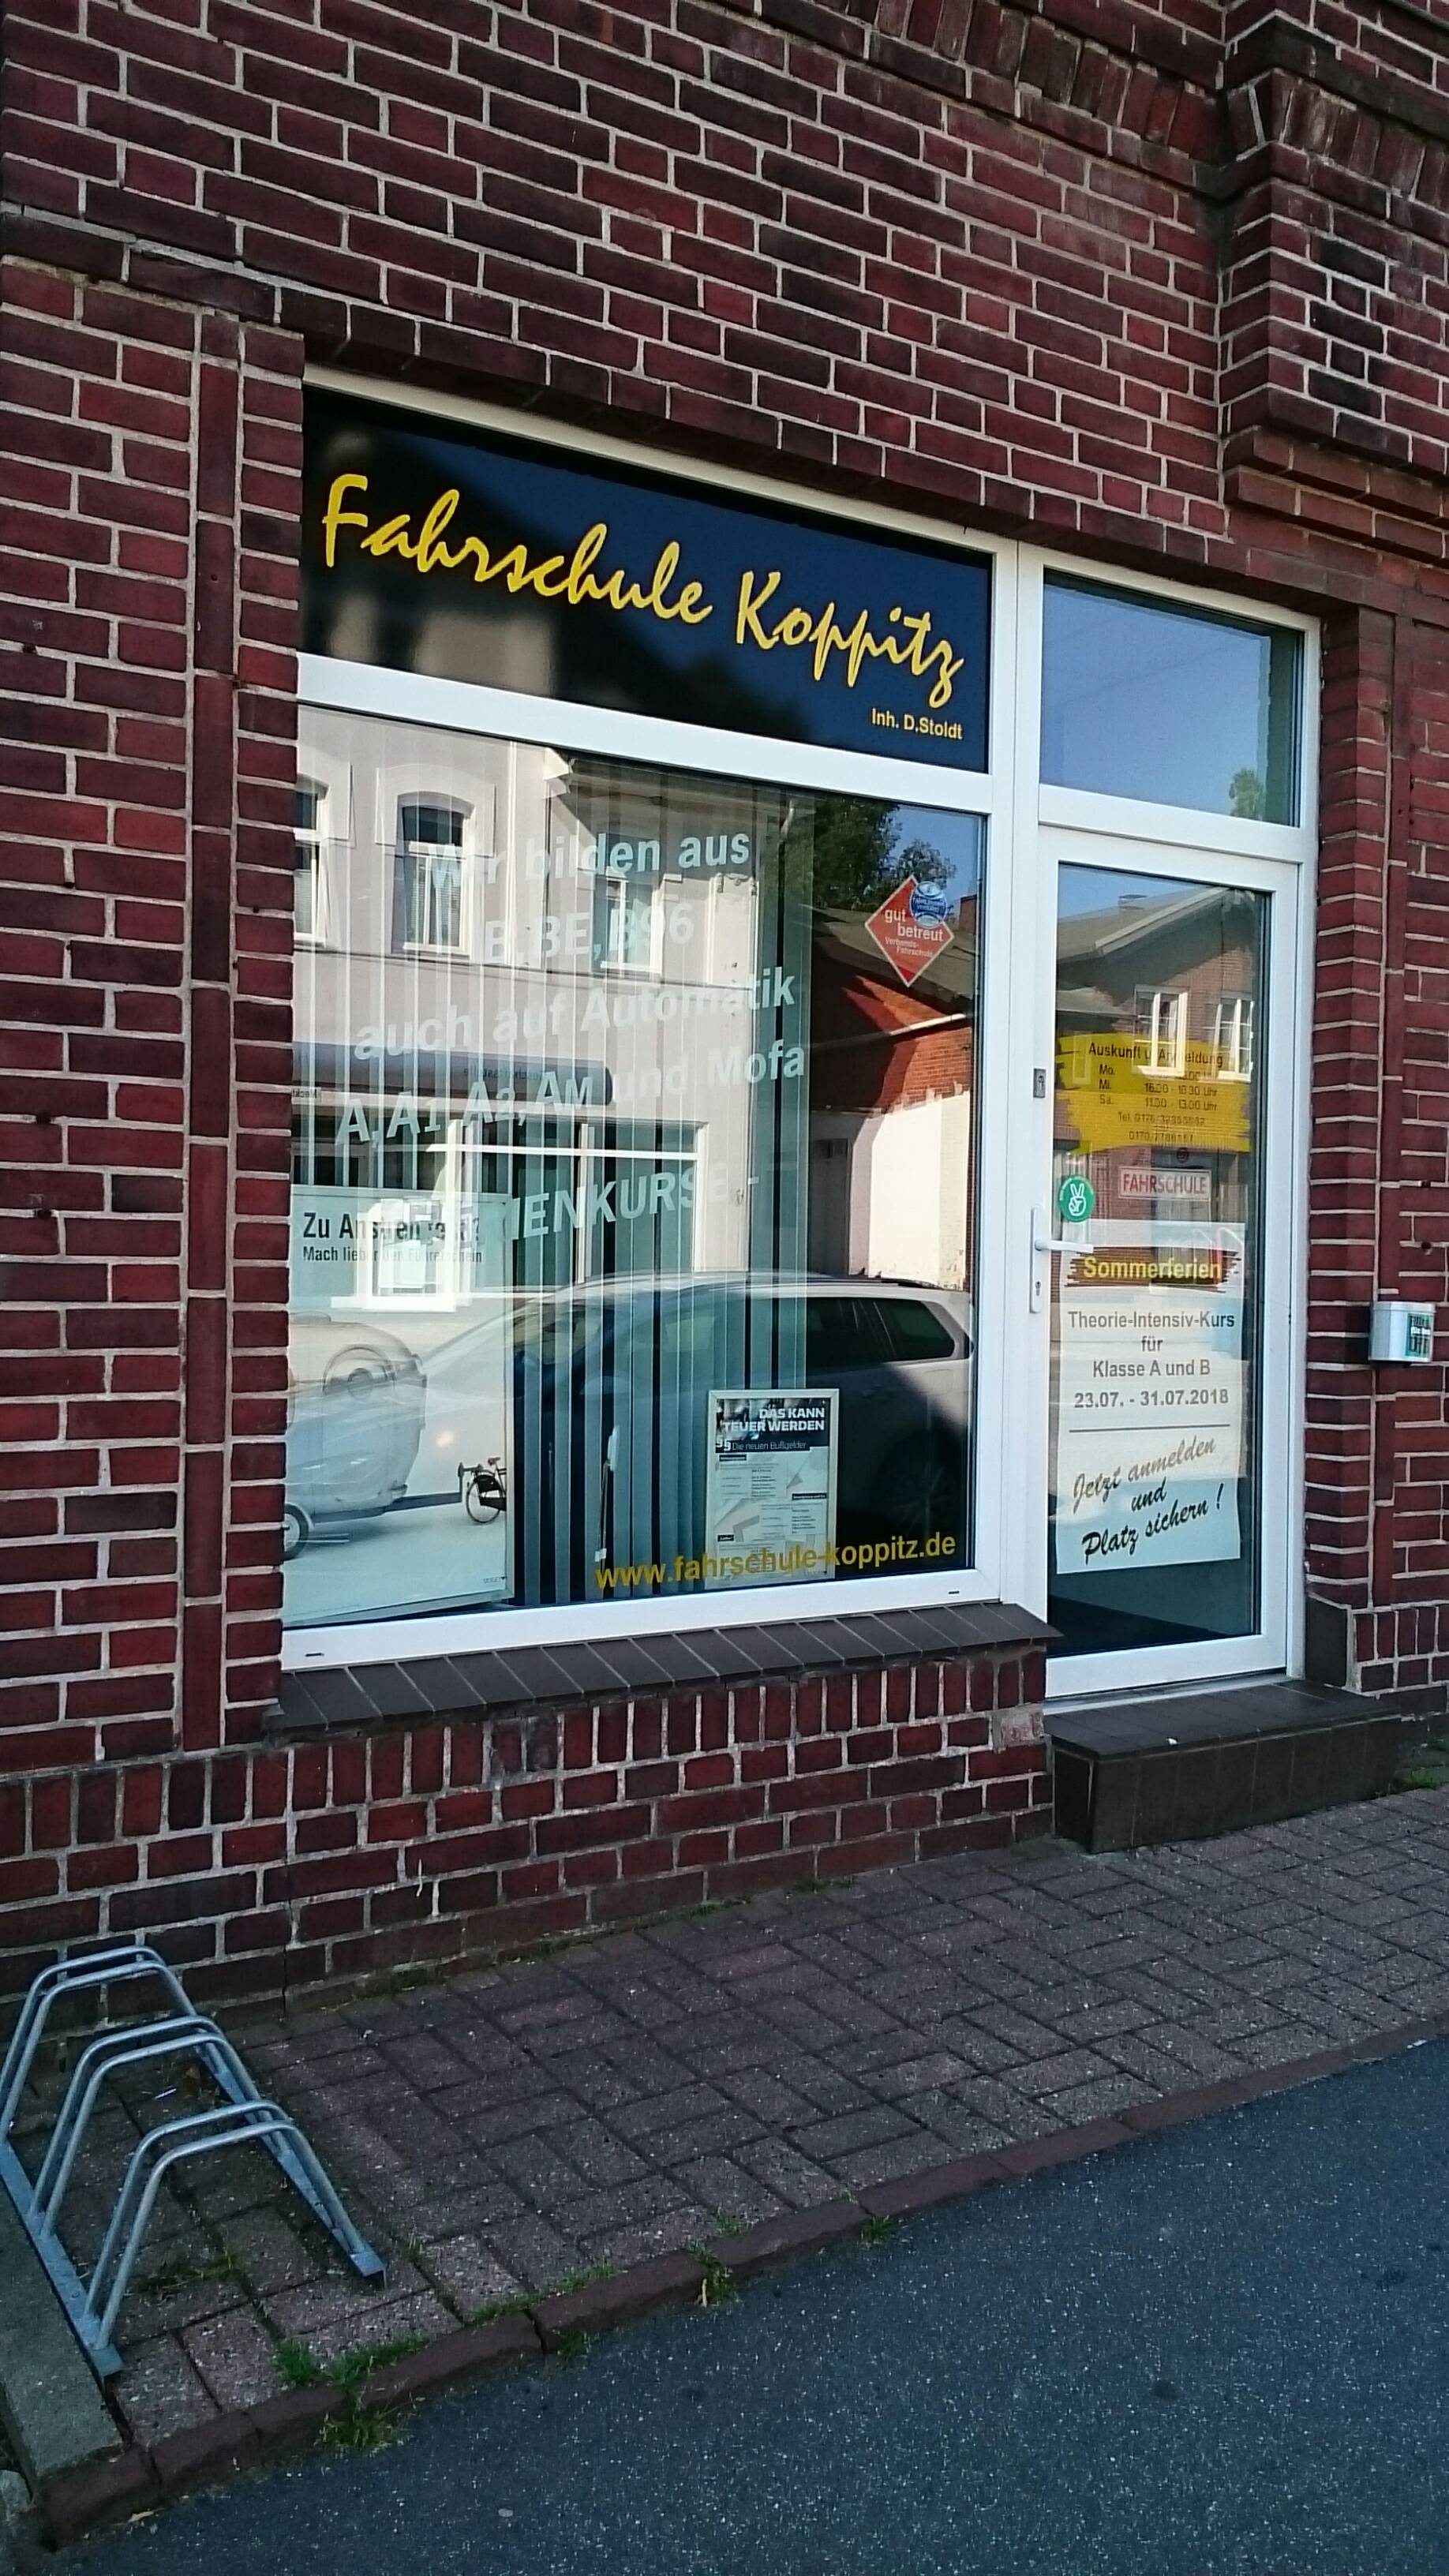 Bild 1 Fahrschule Koppitz, Inh. Dieter Stoldt in Lübeck